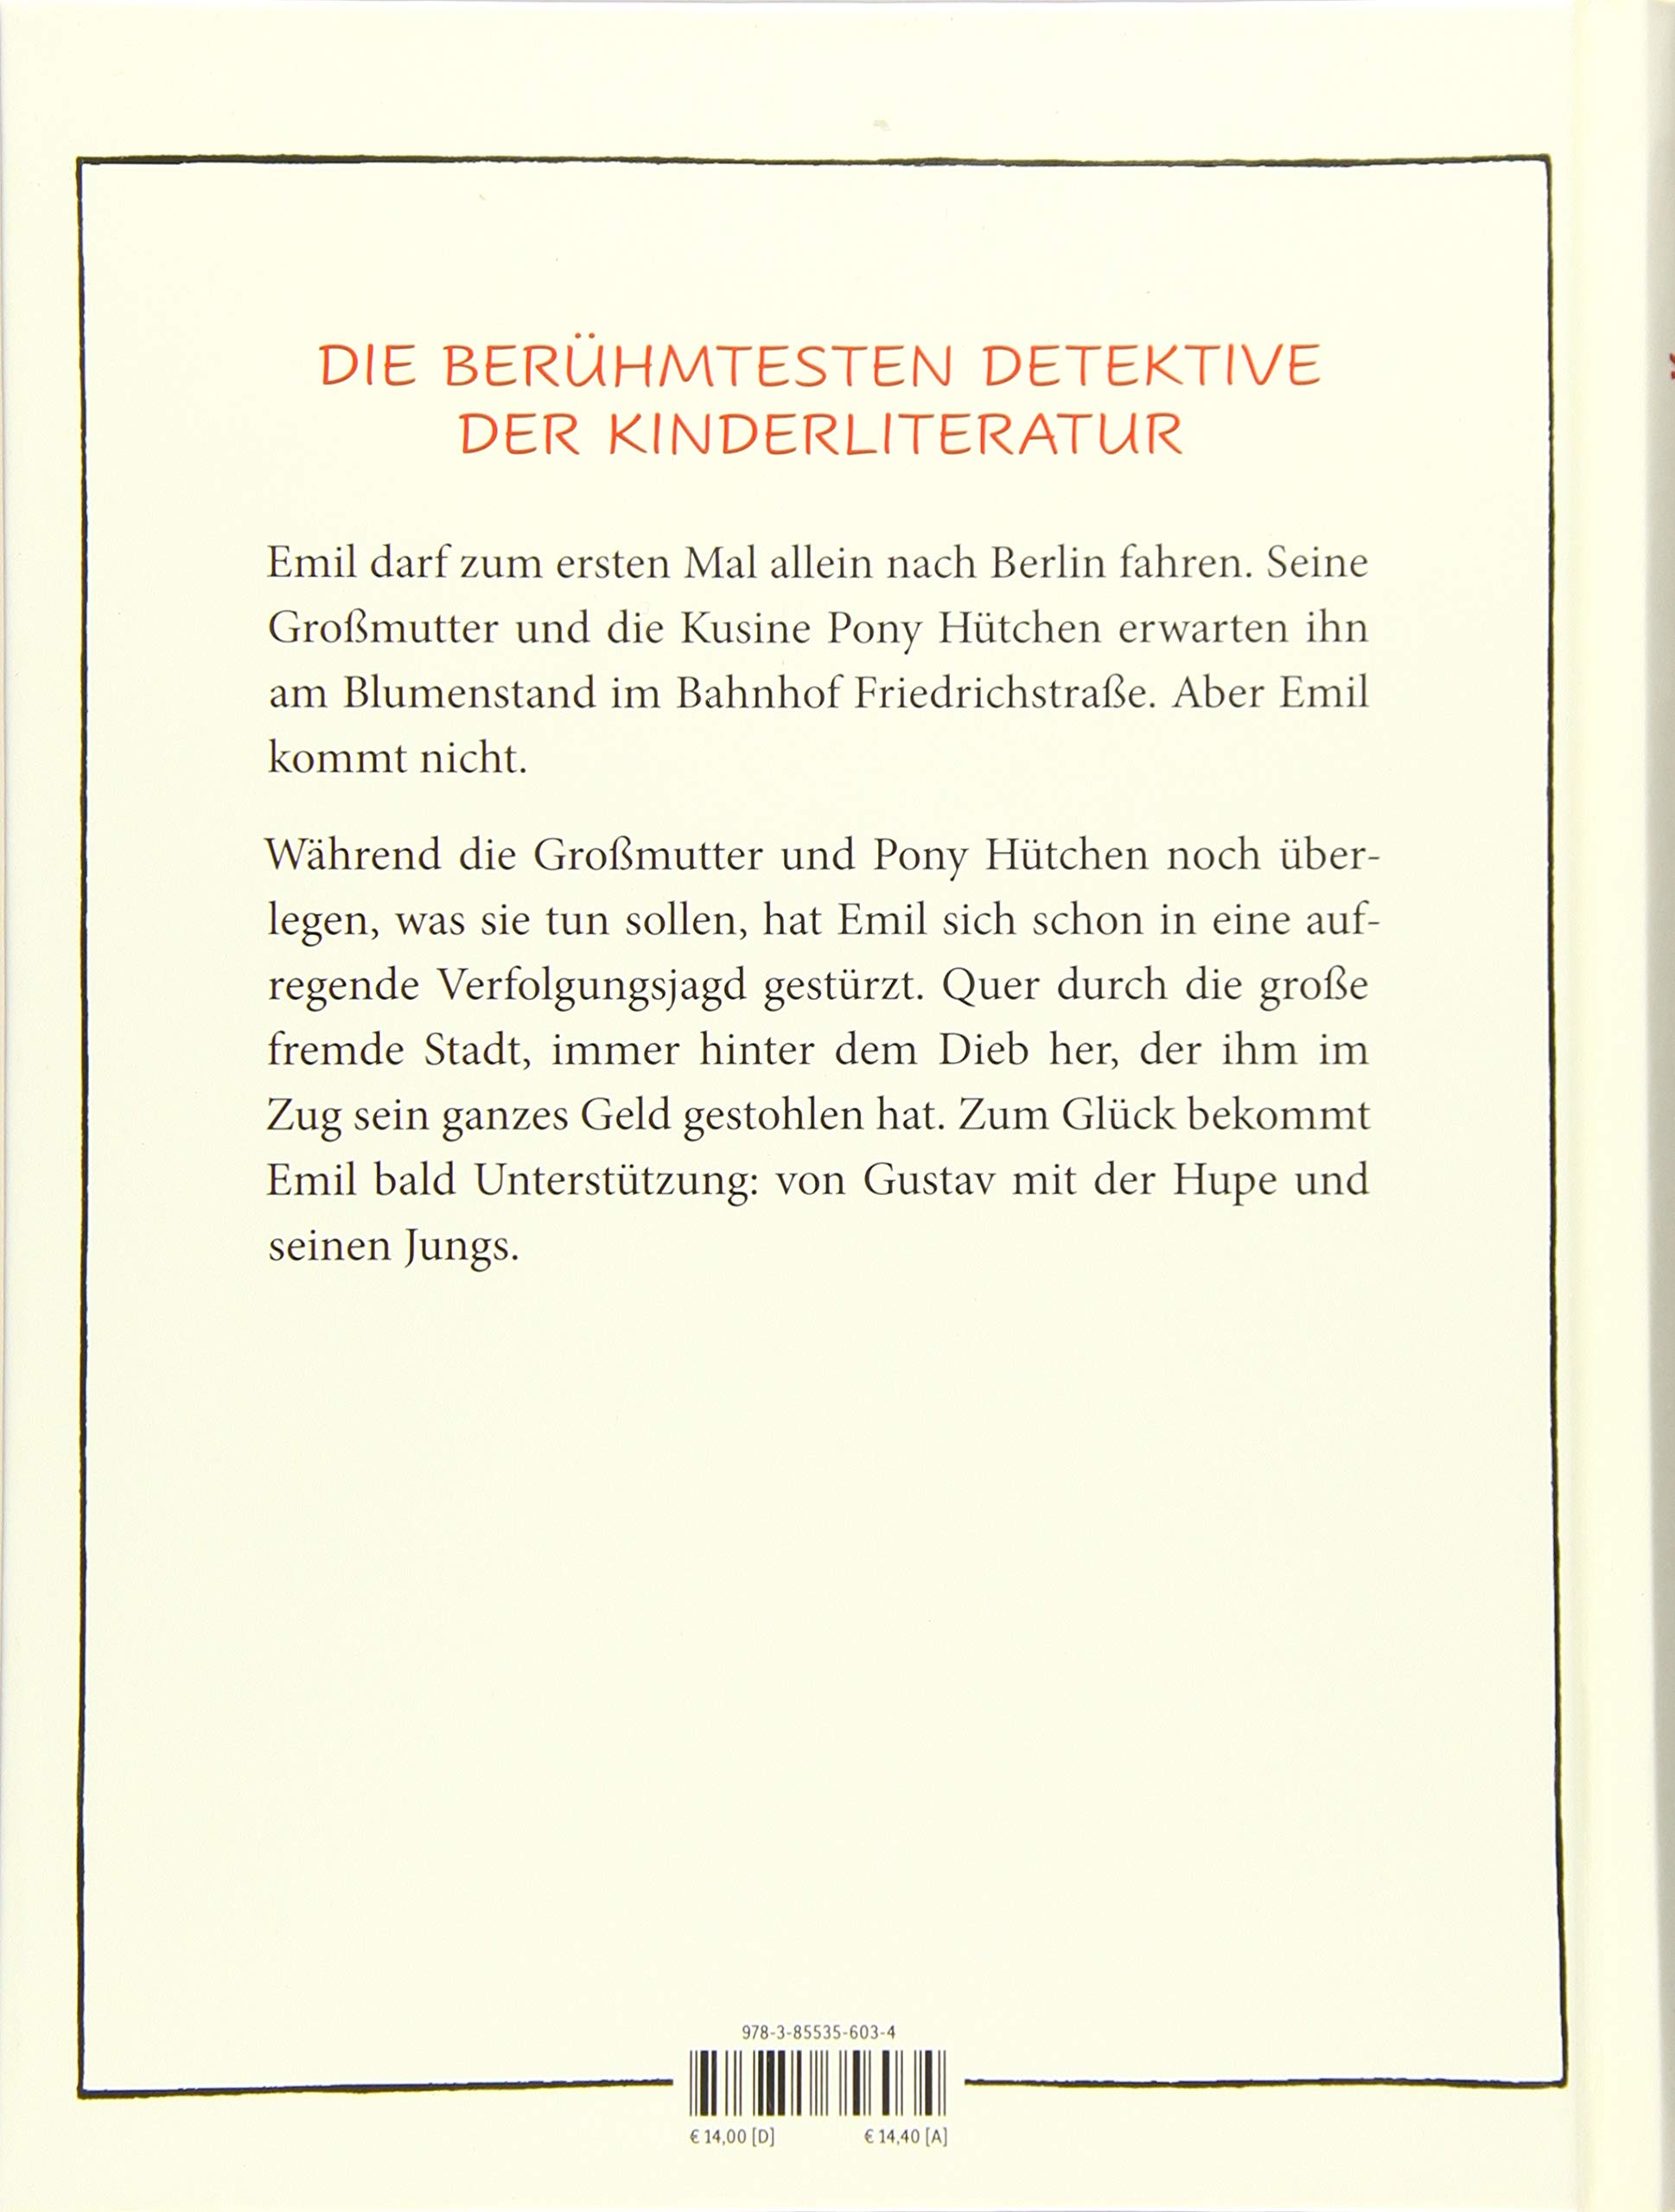 Emil und die Detektive (German Edition)